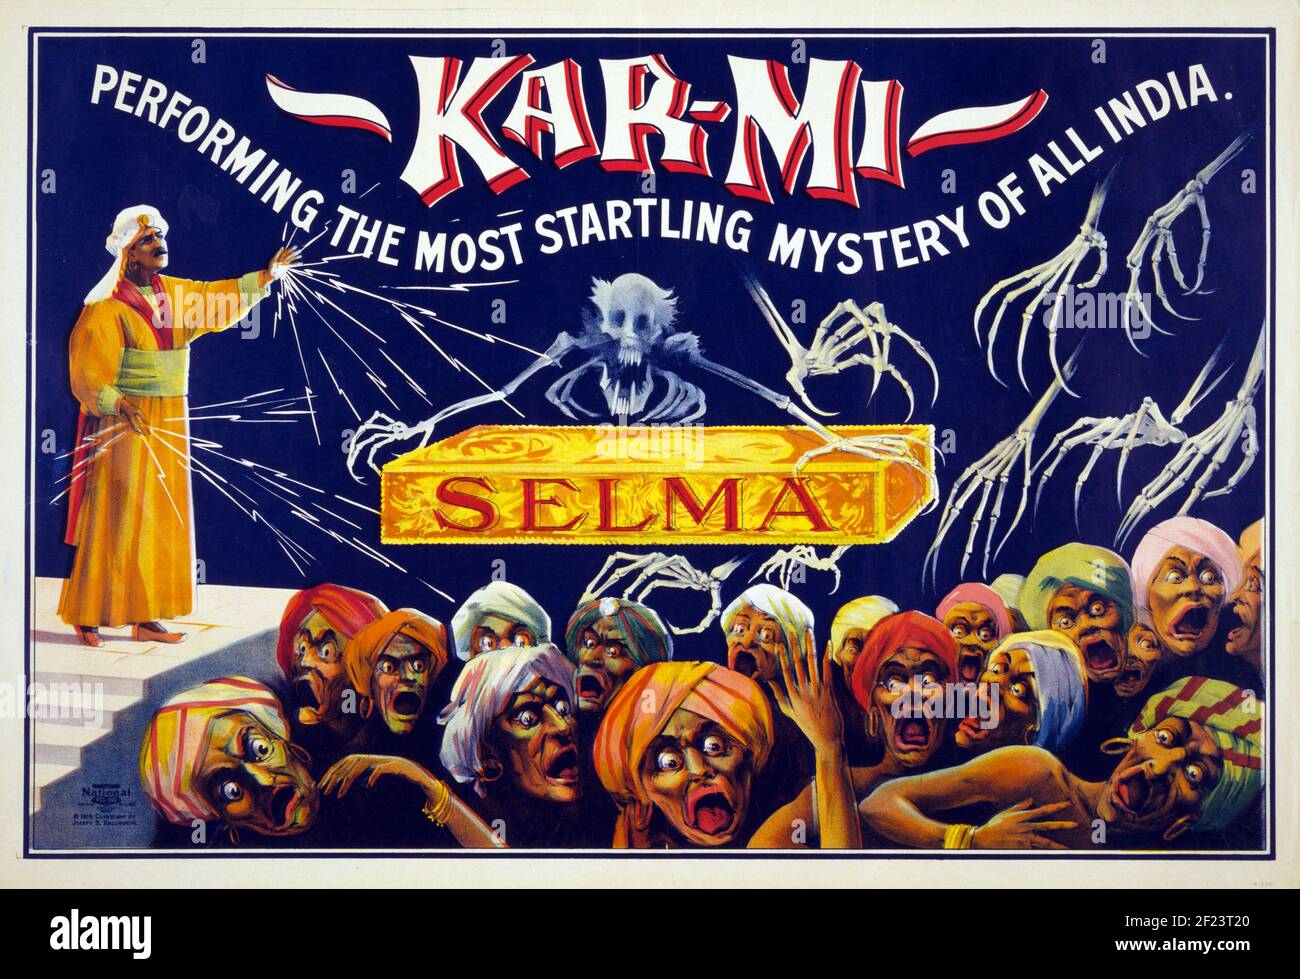 Póster clásico, Kar-mi Mystery-Selma, realizando el misterio más sorprendente de toda la India. 1914. Foto de stock